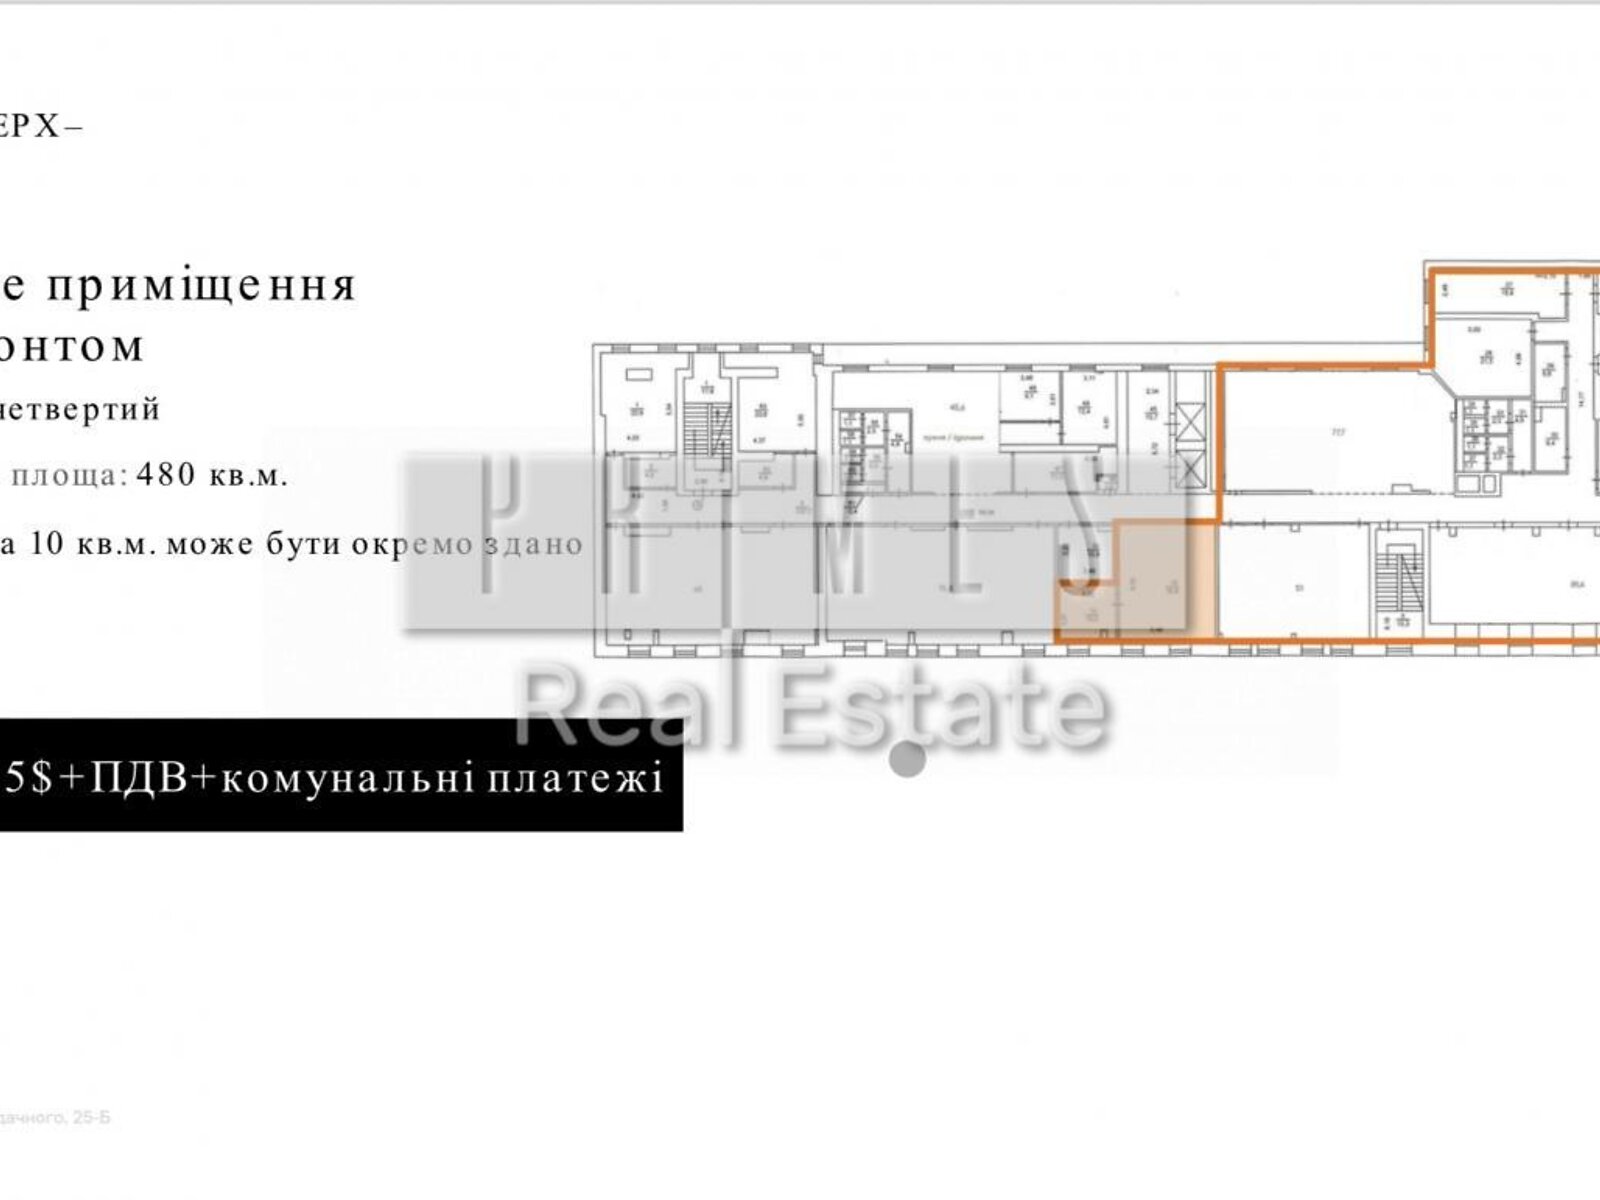 Аренда офисного помещения в Киеве, Петра Сагайдачного улица 25Б, помещений - 8, этаж - 2 фото 1